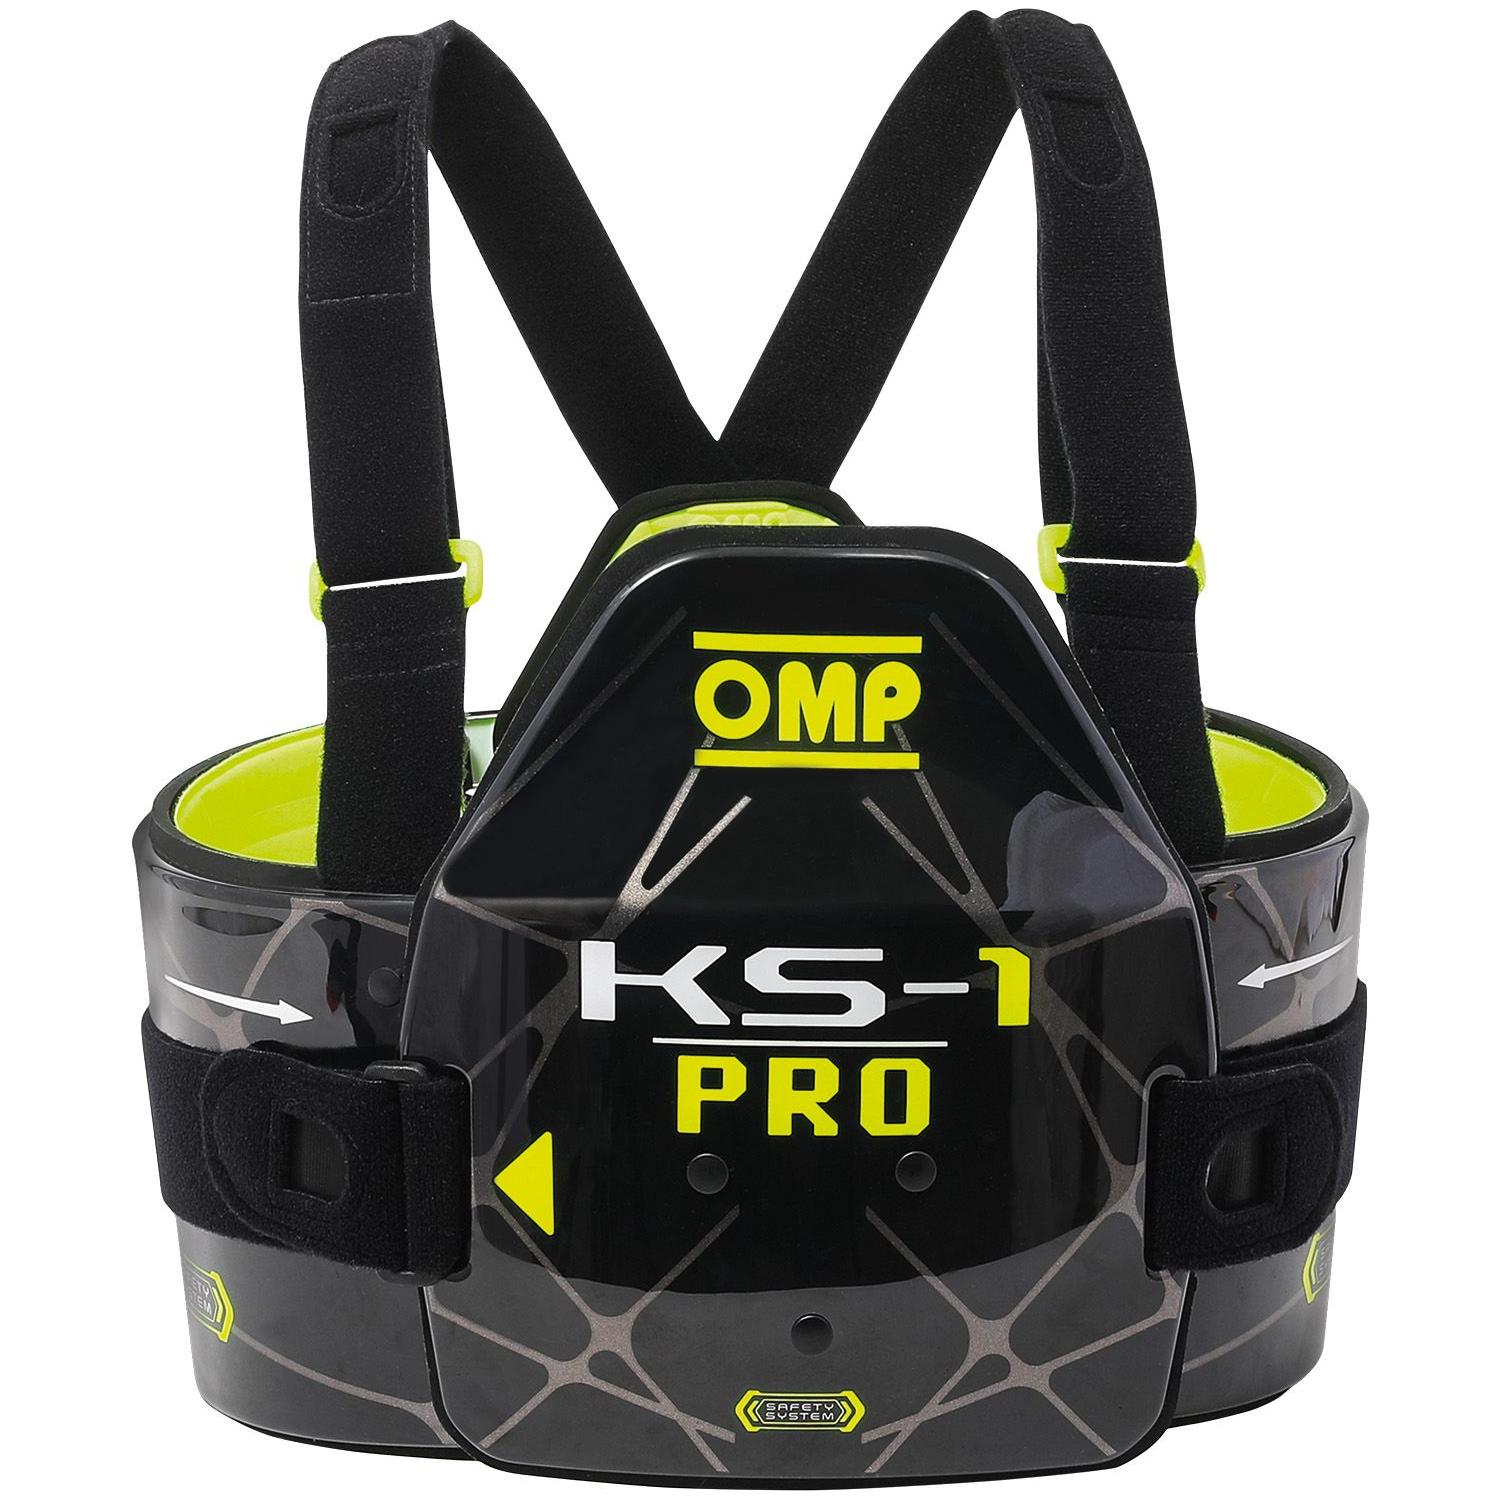 OMP rib protection KS-1 Pro 